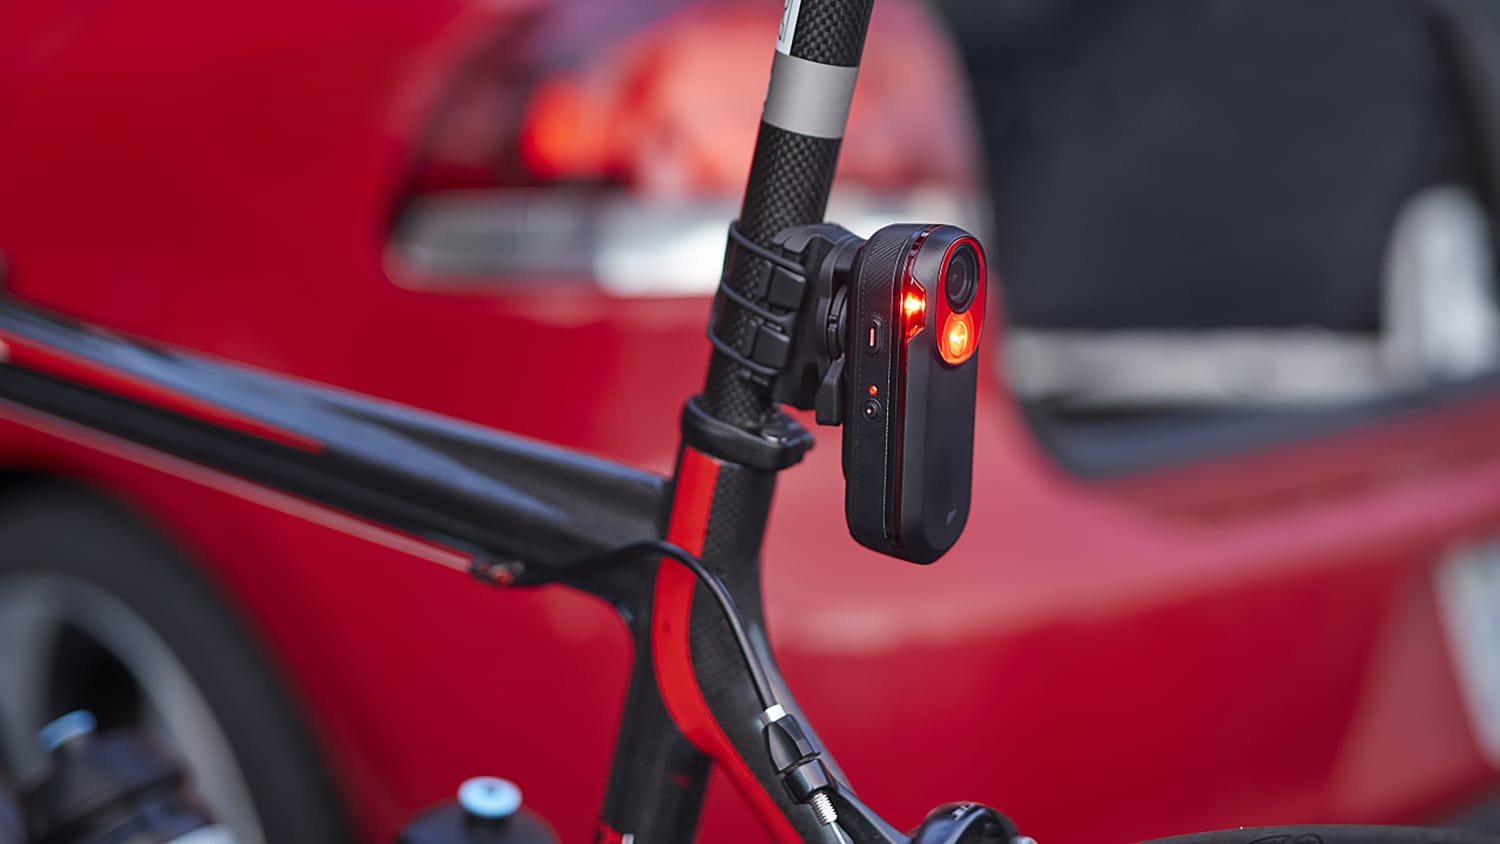 Fahrradzubehör: So wird Ihr Rad zum Smart-Bike